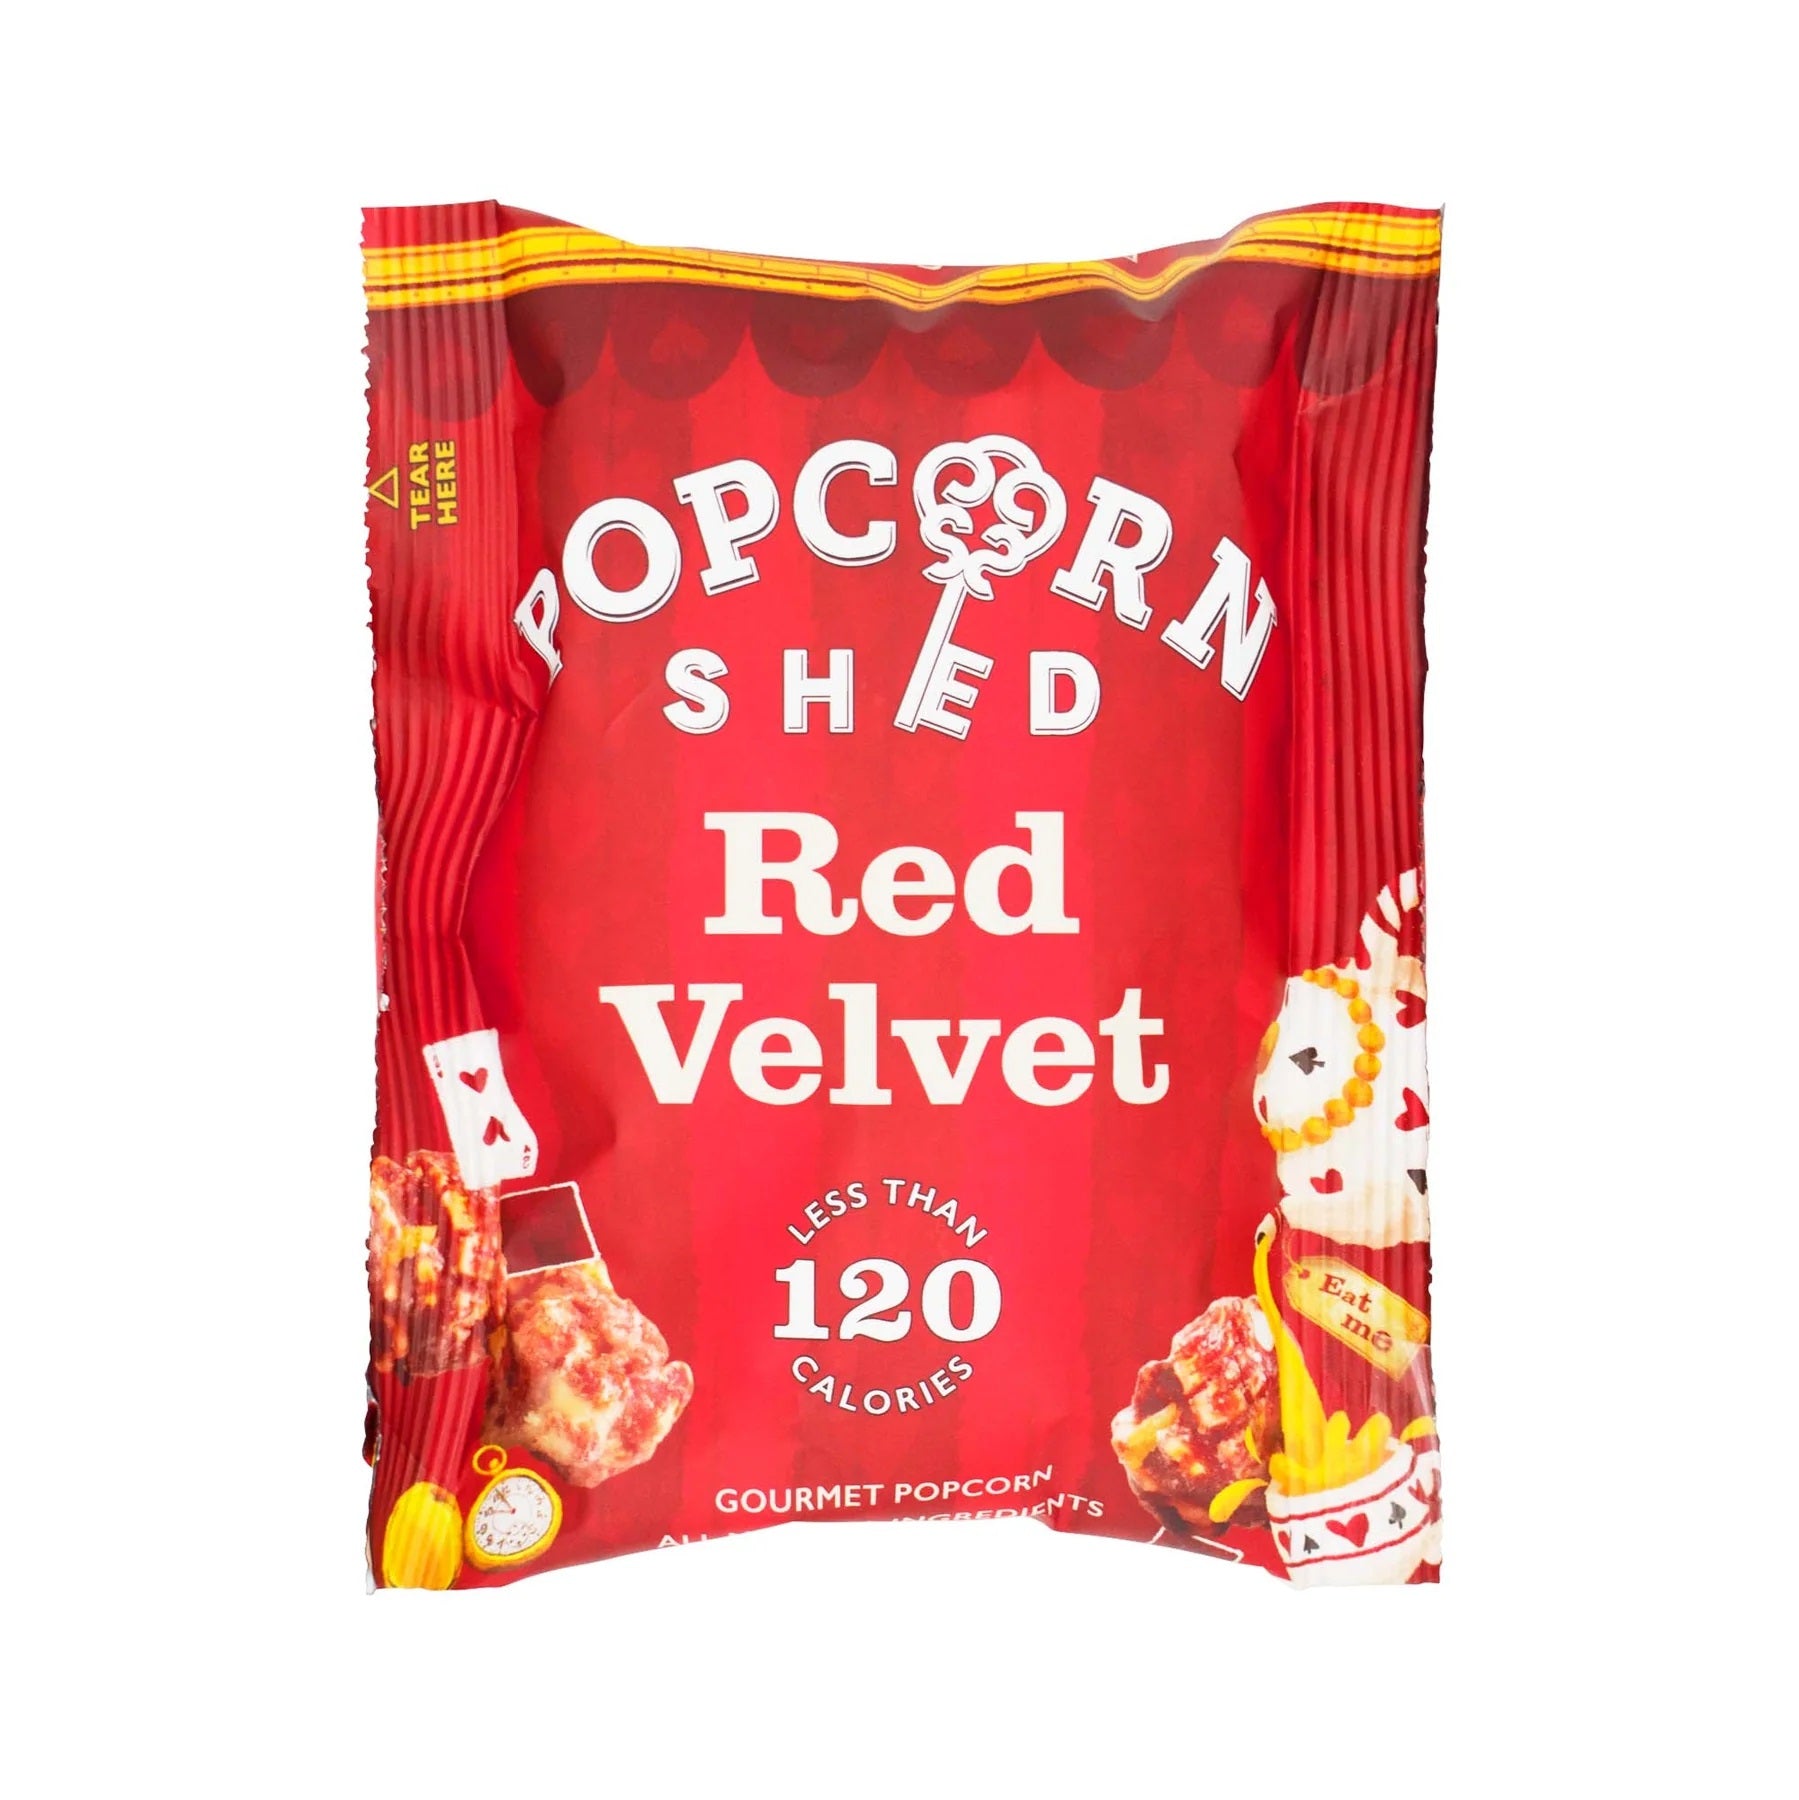 Red Velvet Popcorn - 24g Pack